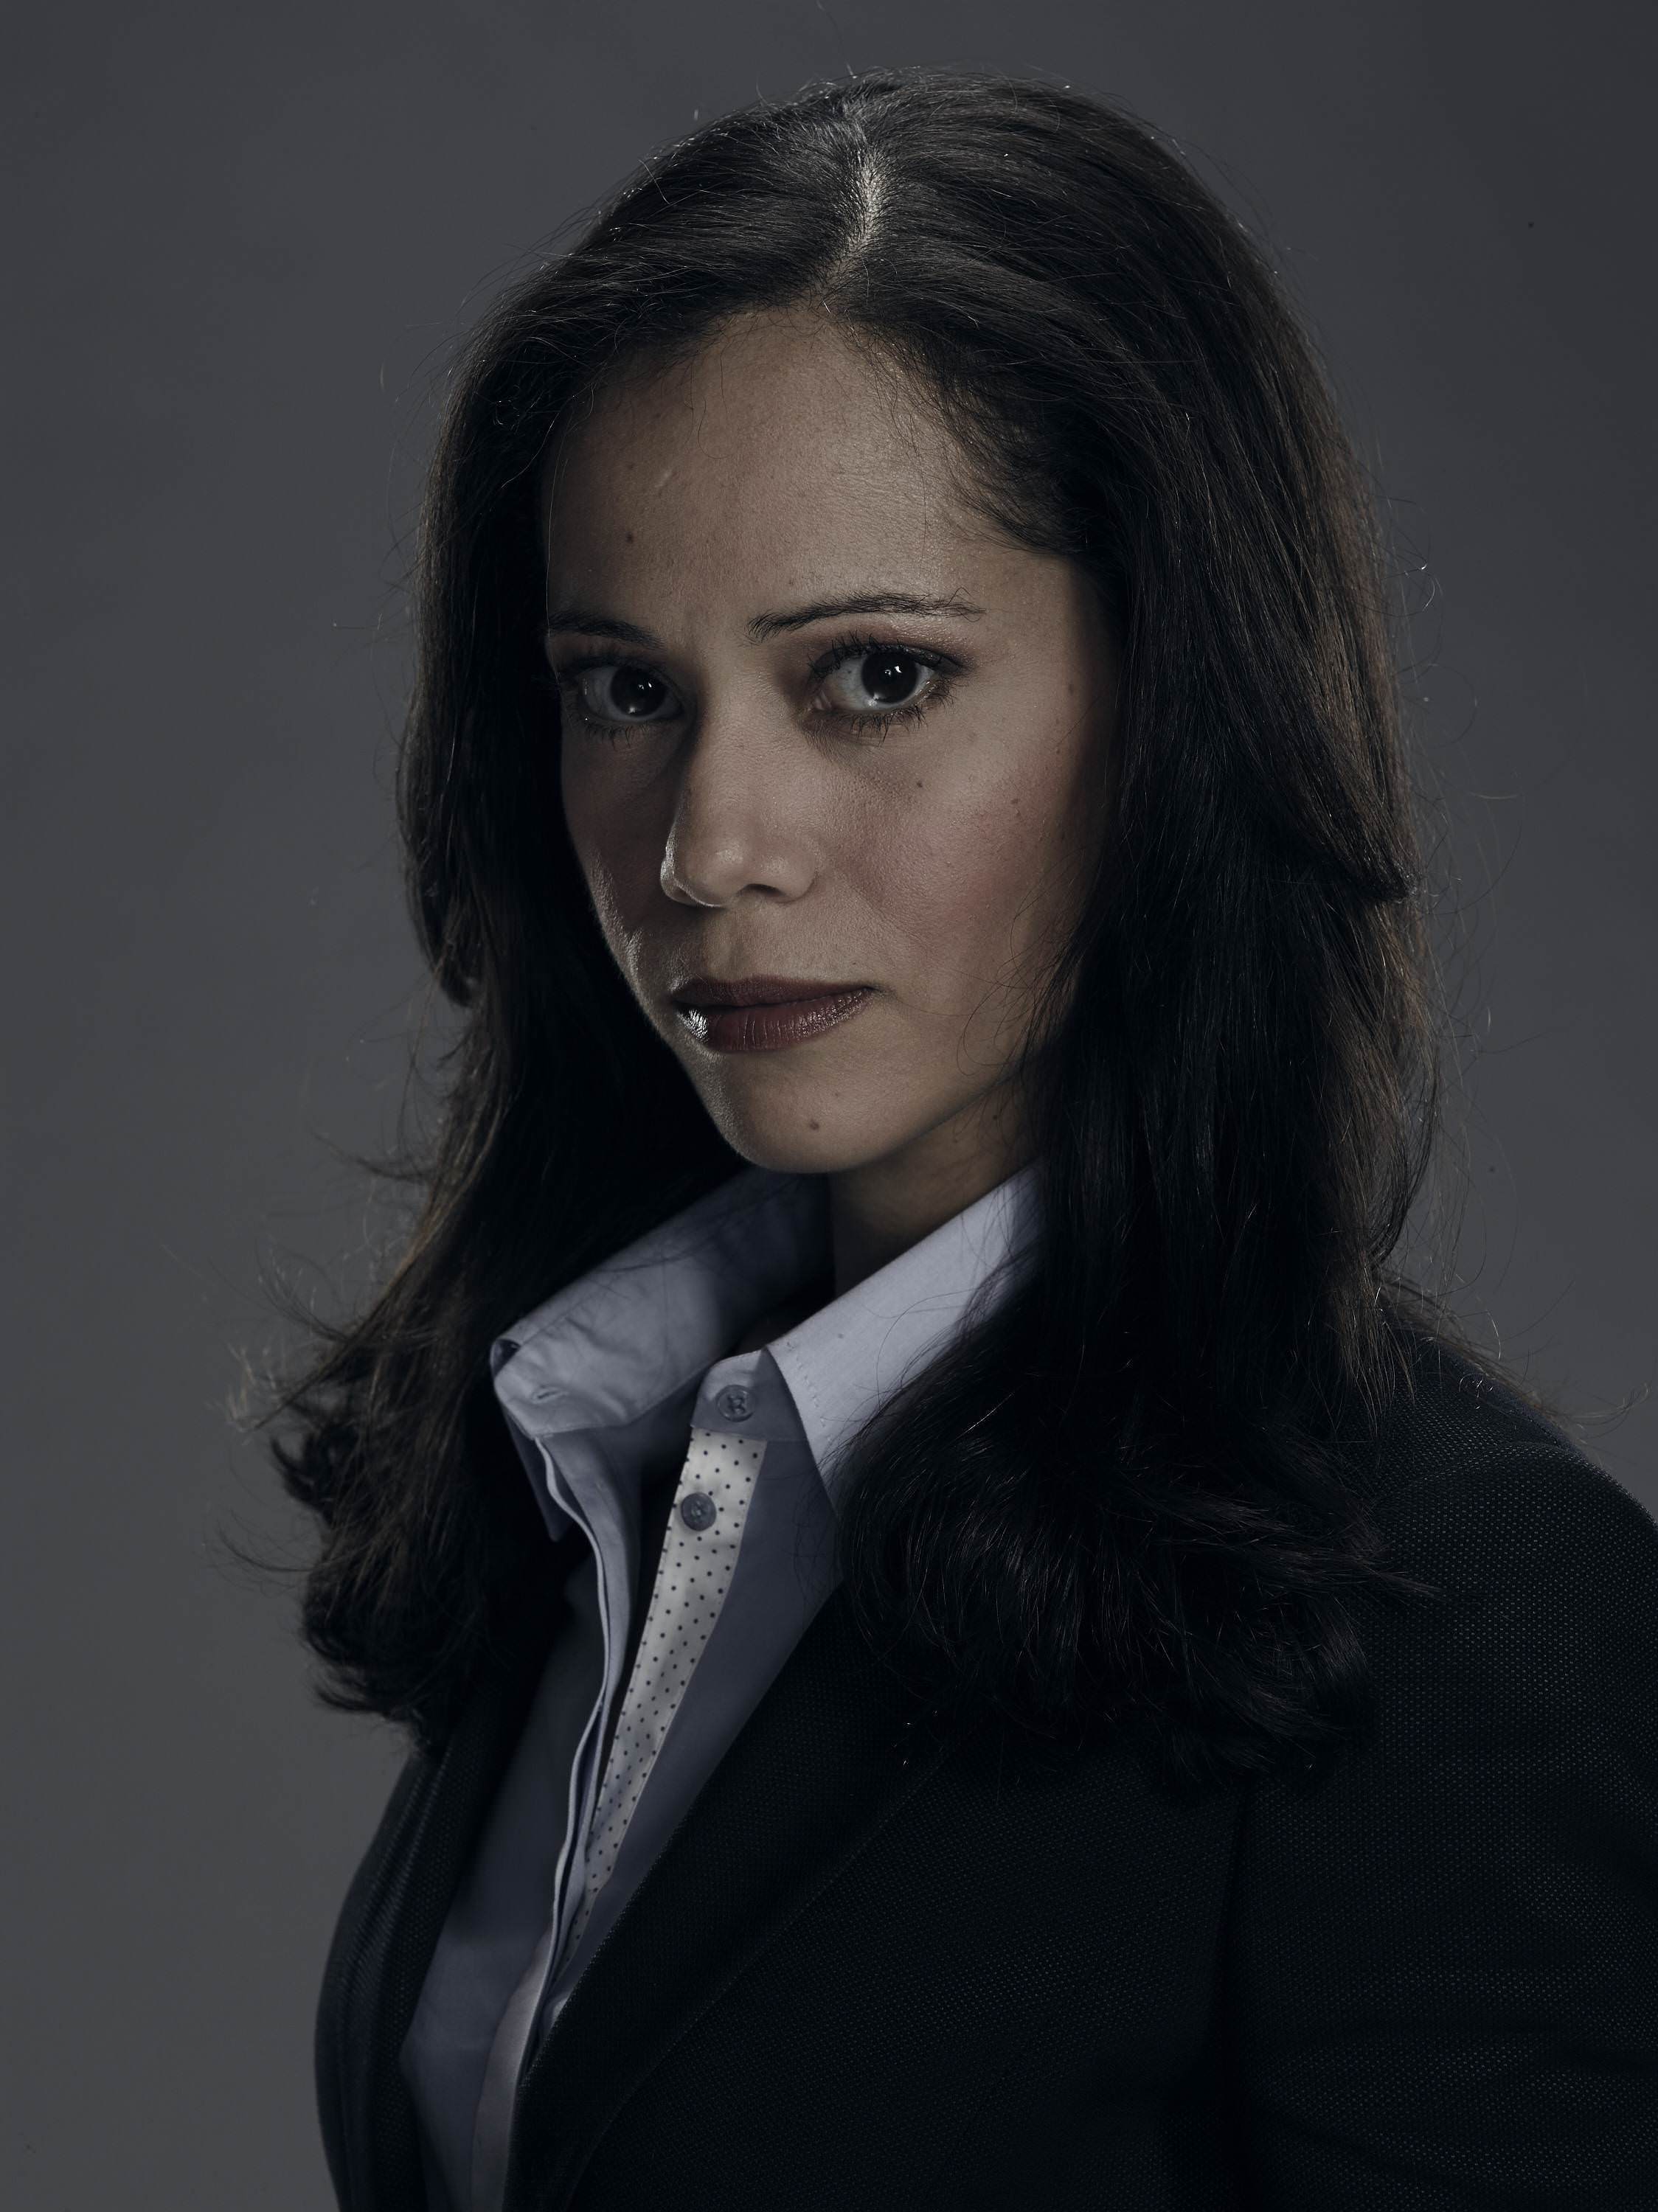 Detective Renee Montoya - GOTHAM